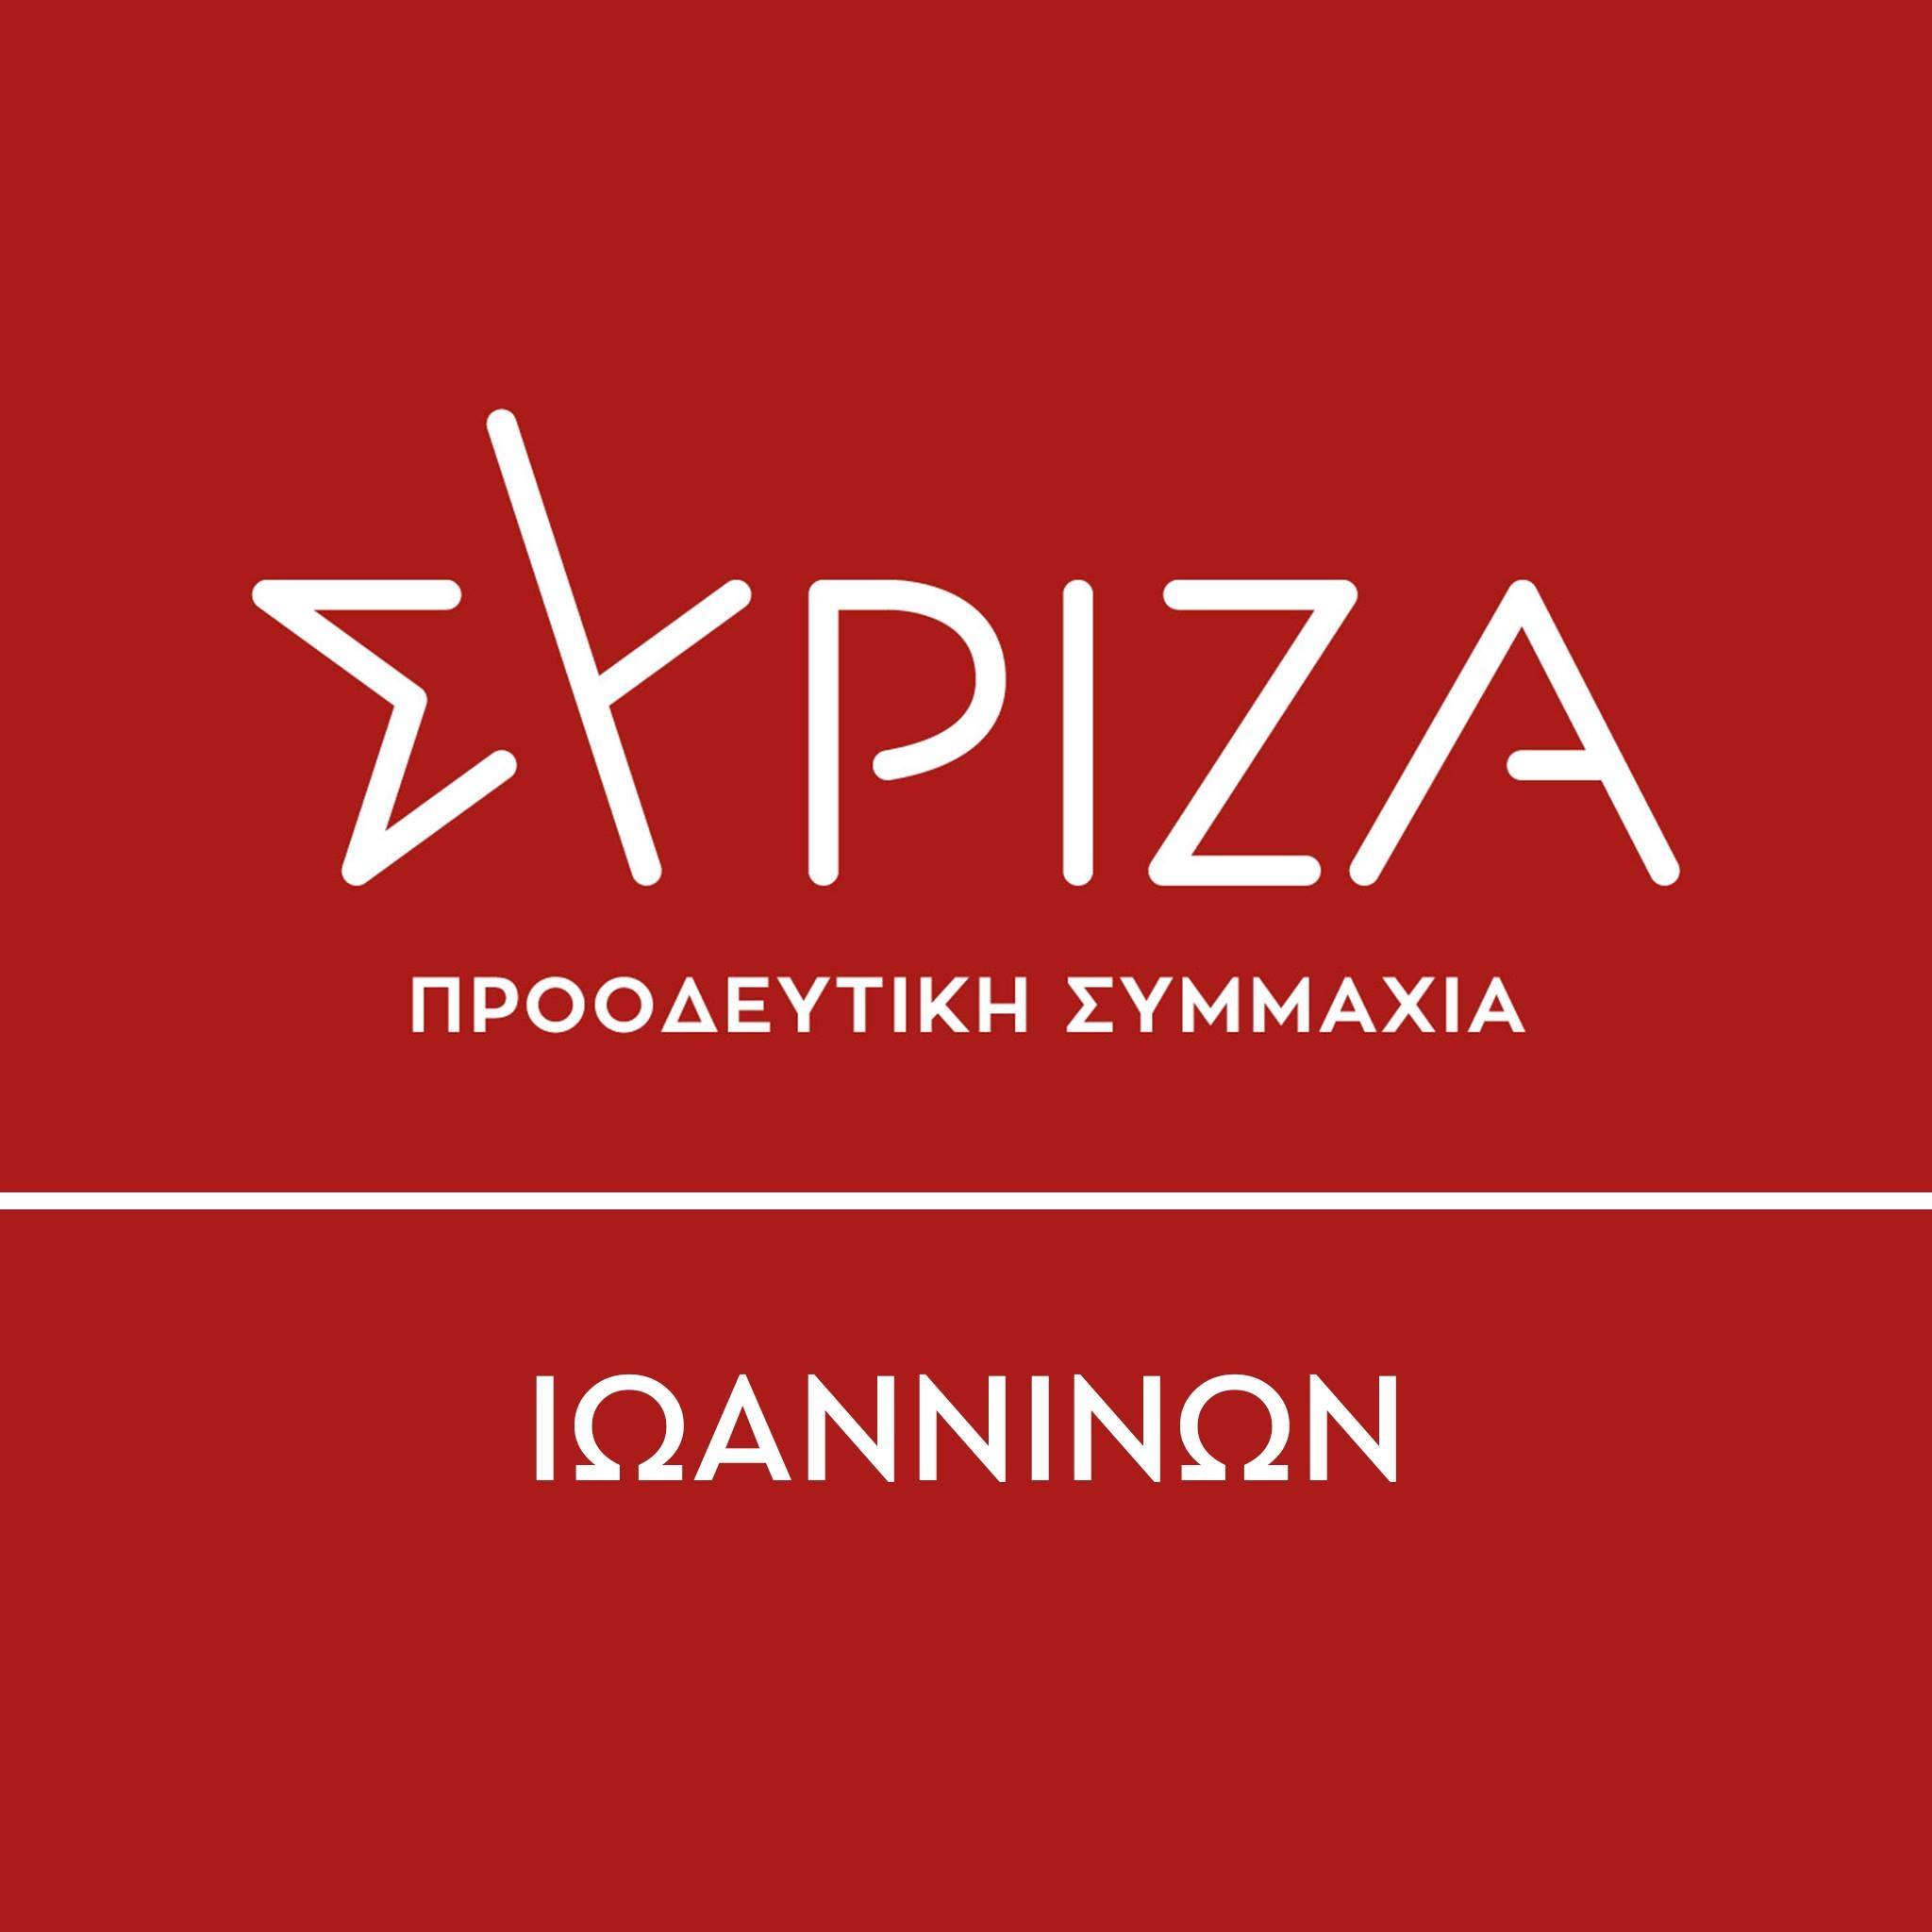 Ιωάννινα: Η Ν.Ε. ΣΥΡΙΖΑ-ΠΣ καλεί τη Μ. Τζούφη να παραδώσει τη βουλευτική έδρα